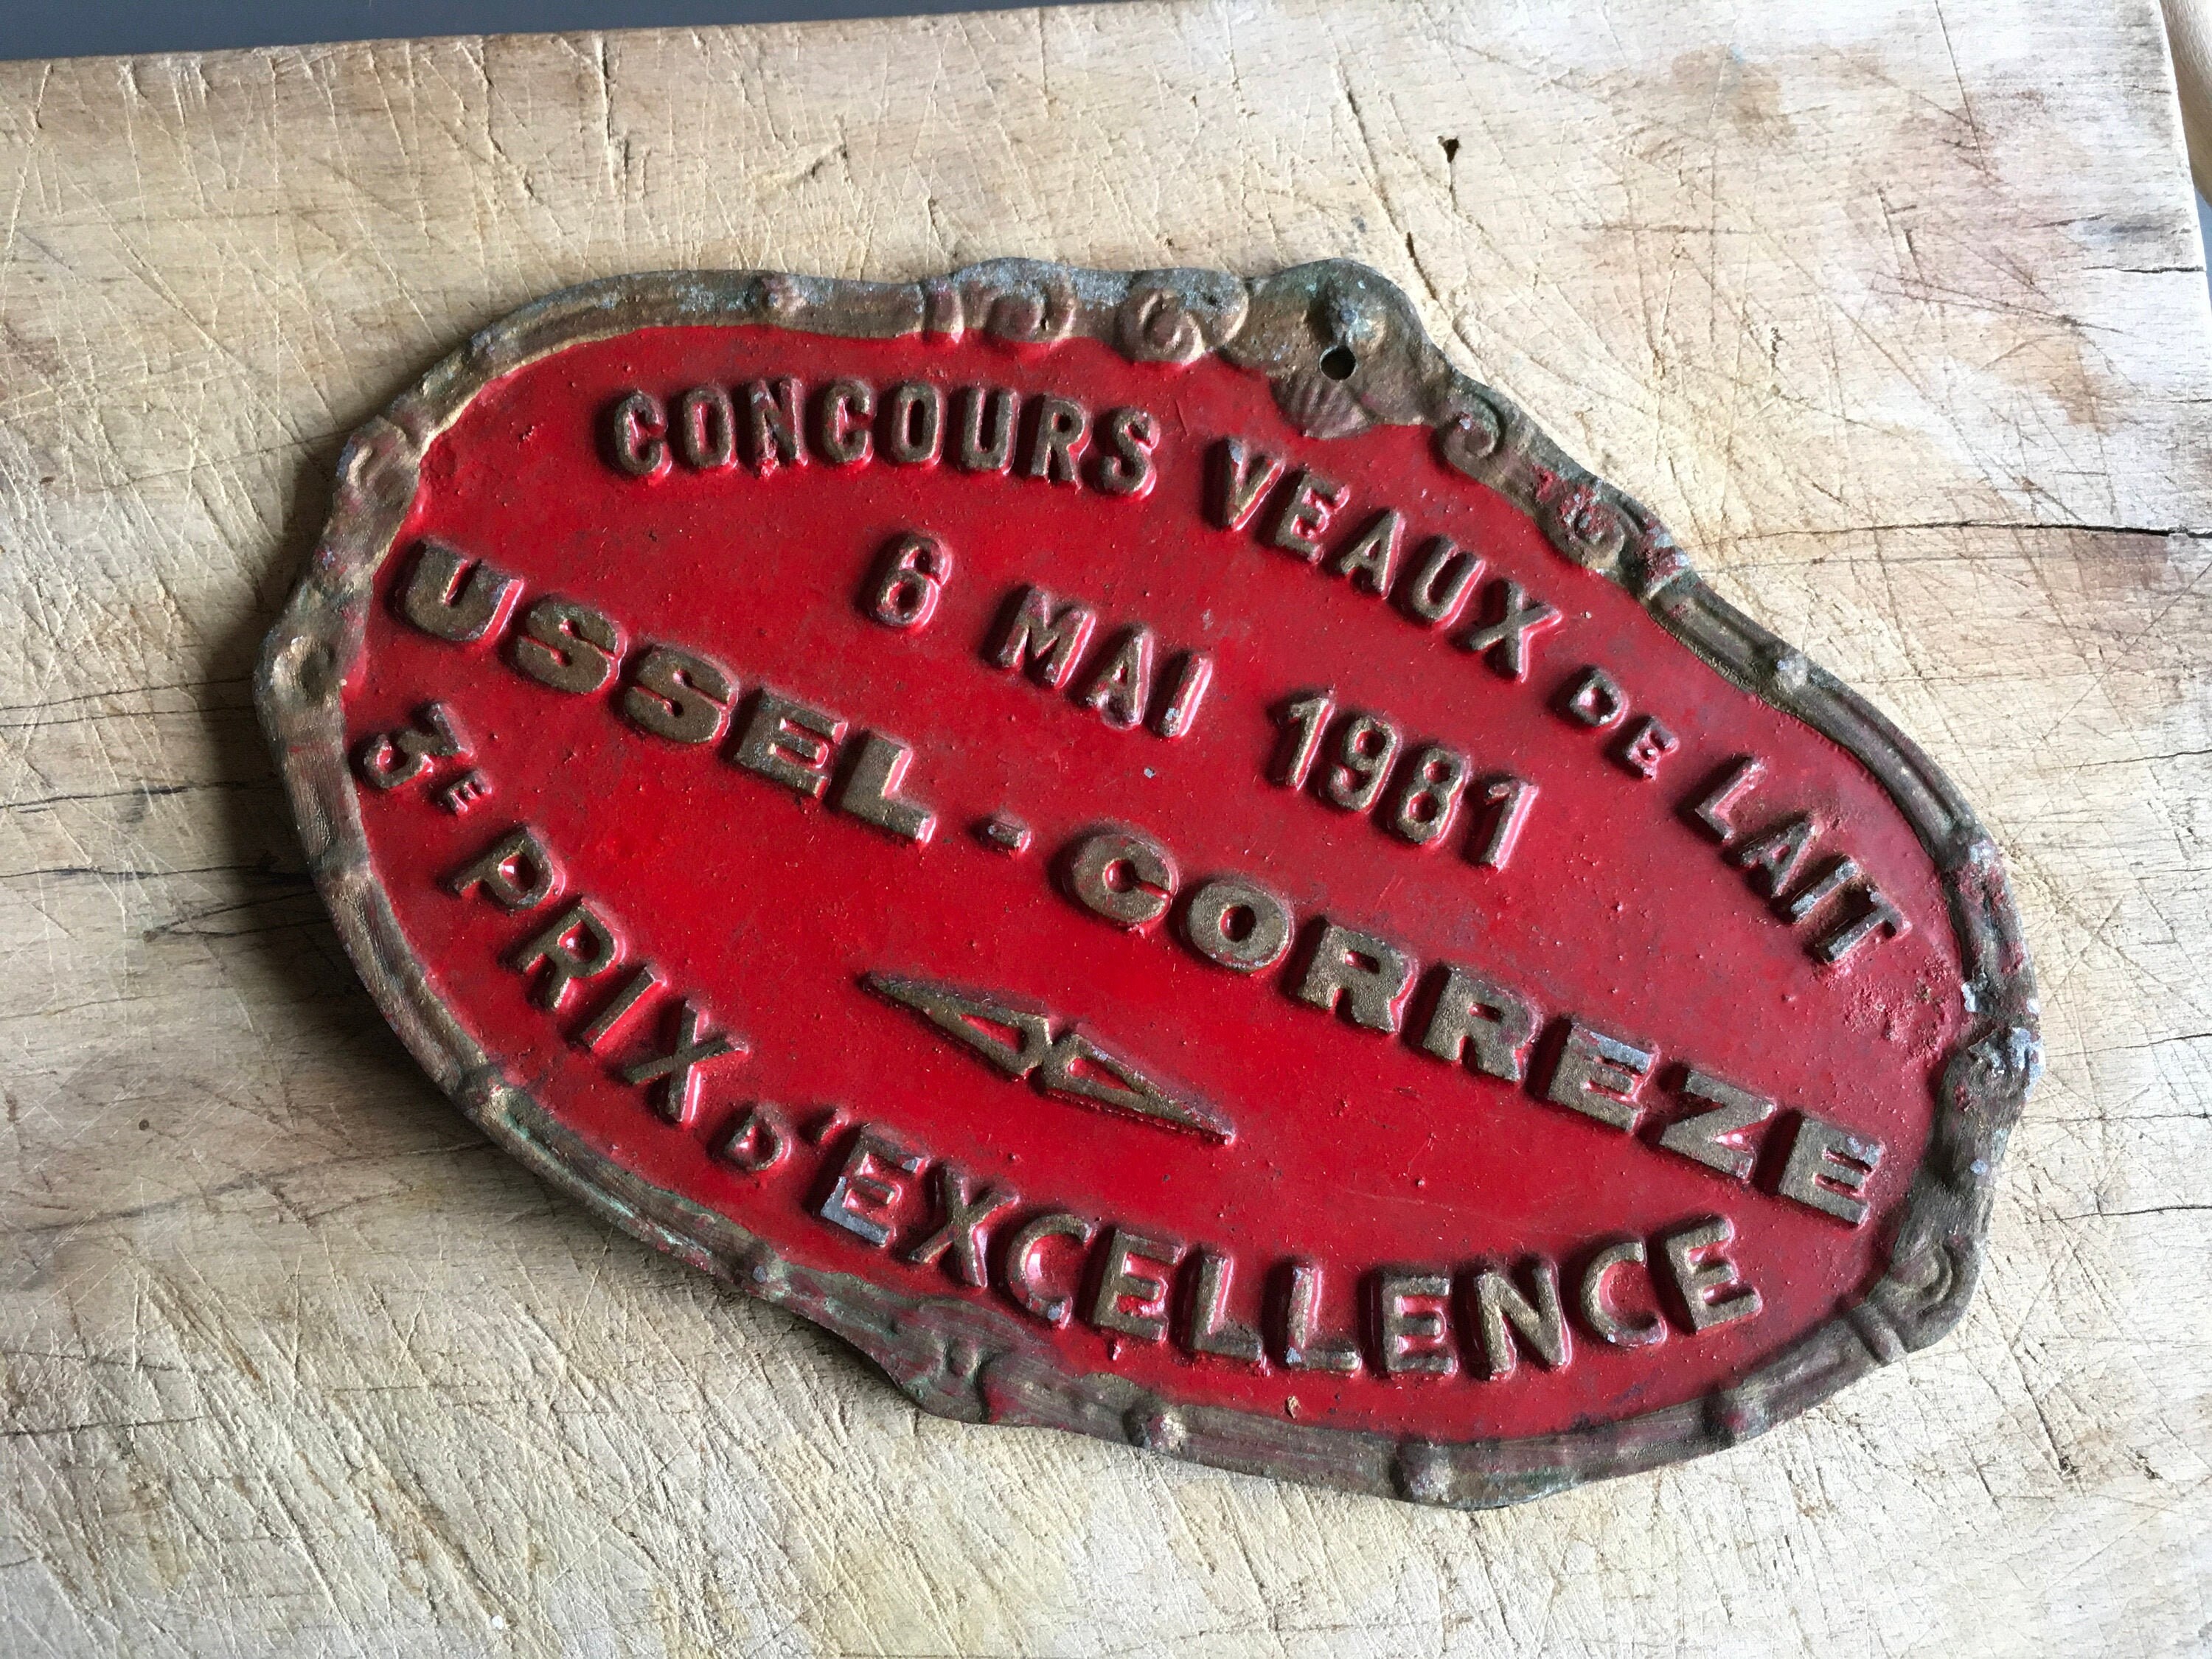 Prix de Bétail, Vintage Français Alluminium, Enseignes Boucher, Décoration Ferme.